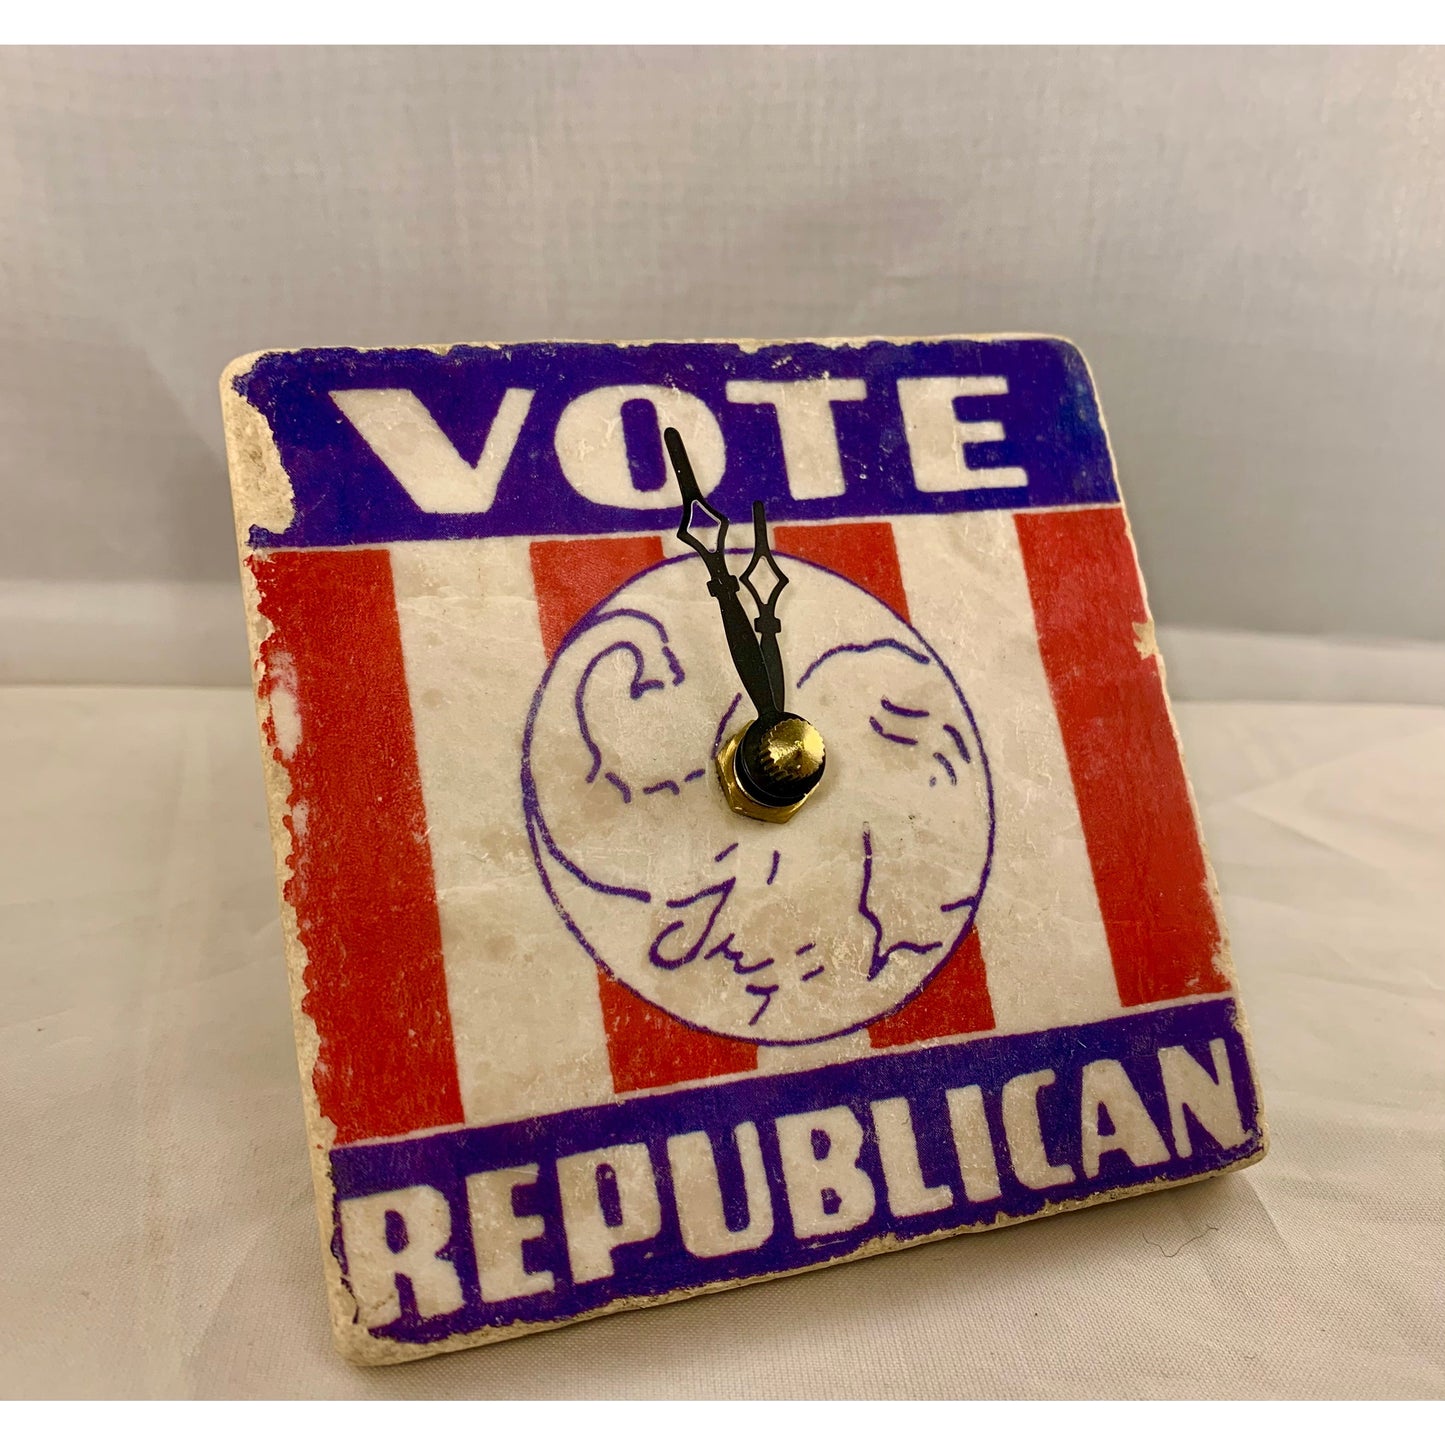 Vote Republican Political Stone Clock 4"